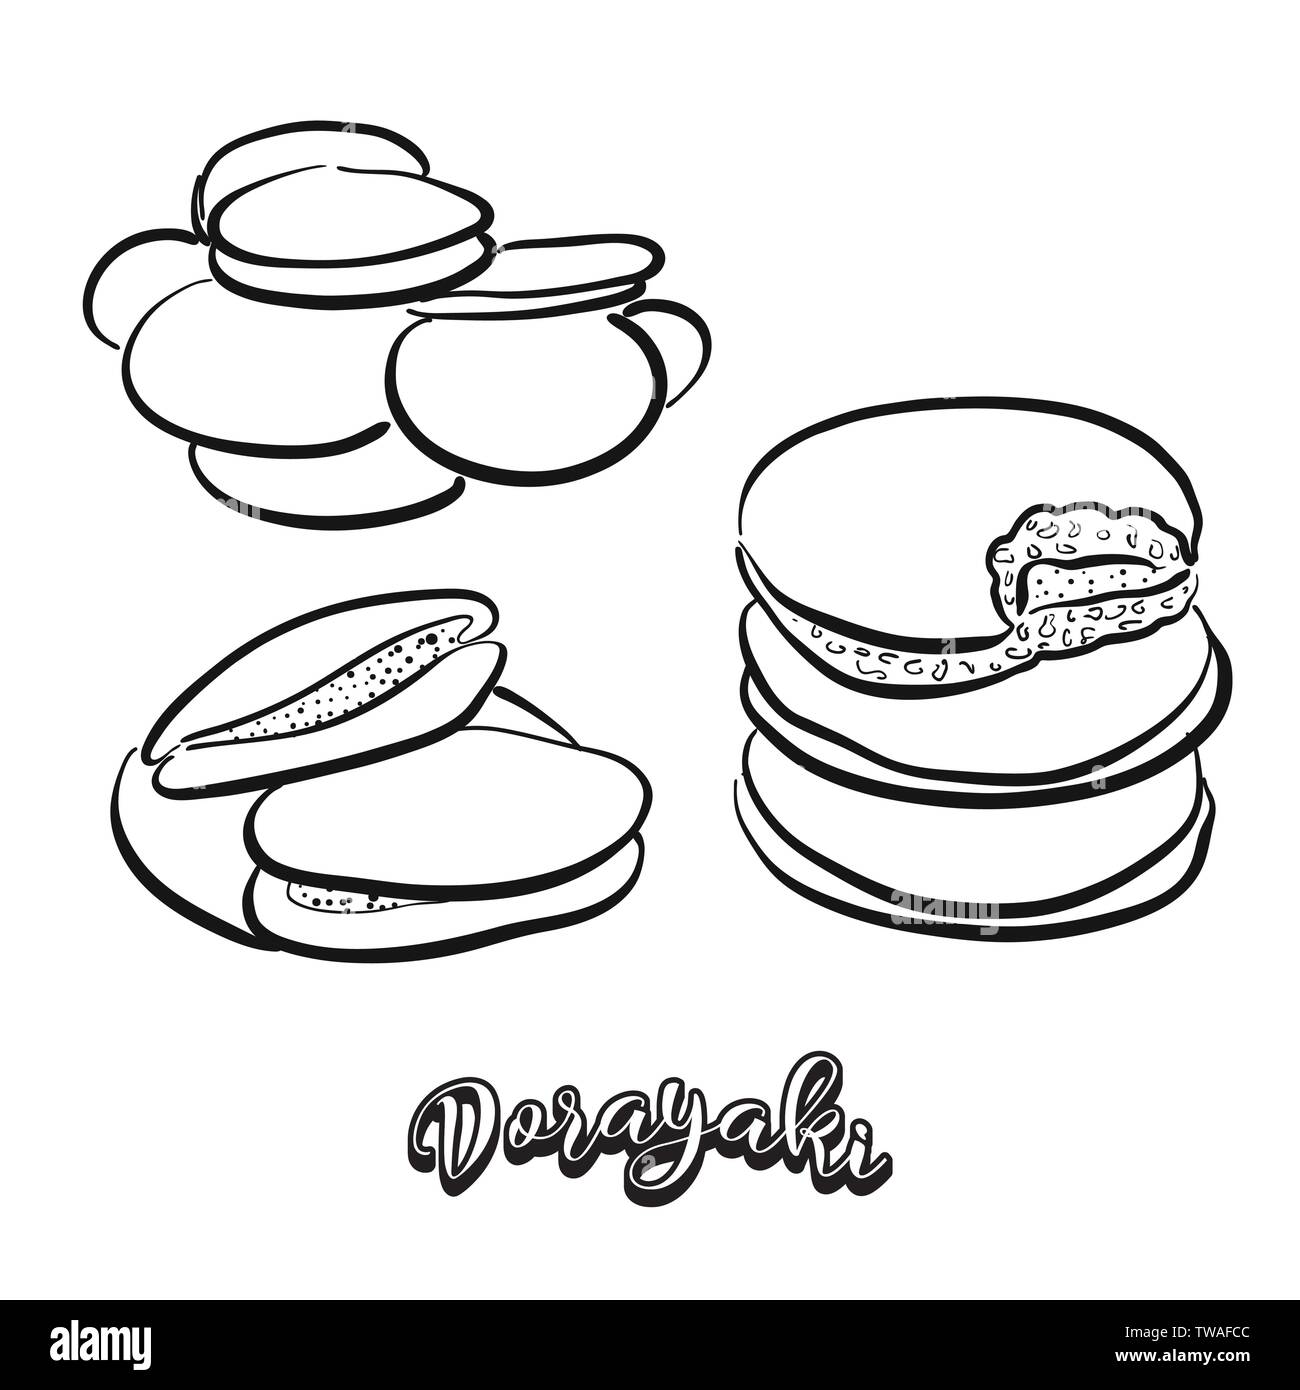 Dorayaki cibo disegna sulla lavagna. Vettore di disegno di pancake, usualmente noto in Giappone. Illustrazione alimentare serie. Illustrazione Vettoriale